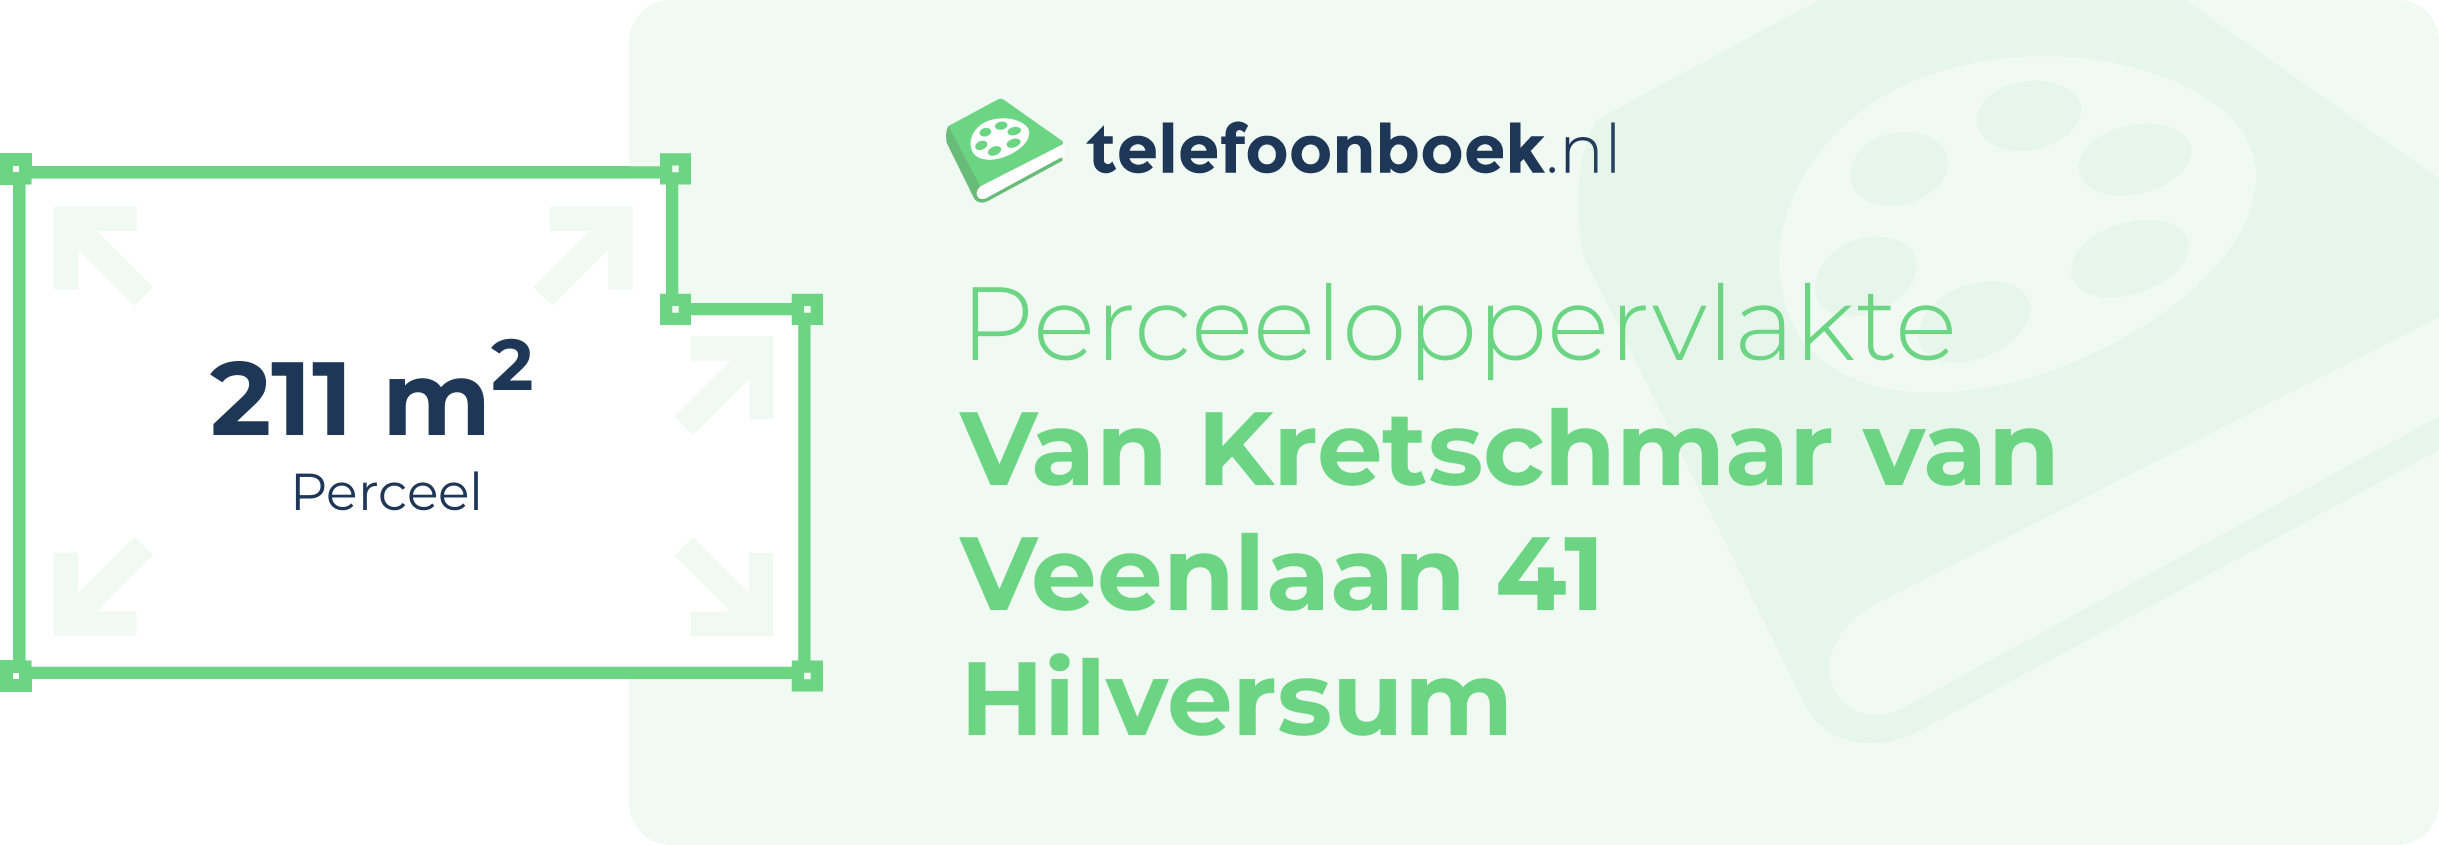 Perceeloppervlakte Van Kretschmar Van Veenlaan 41 Hilversum